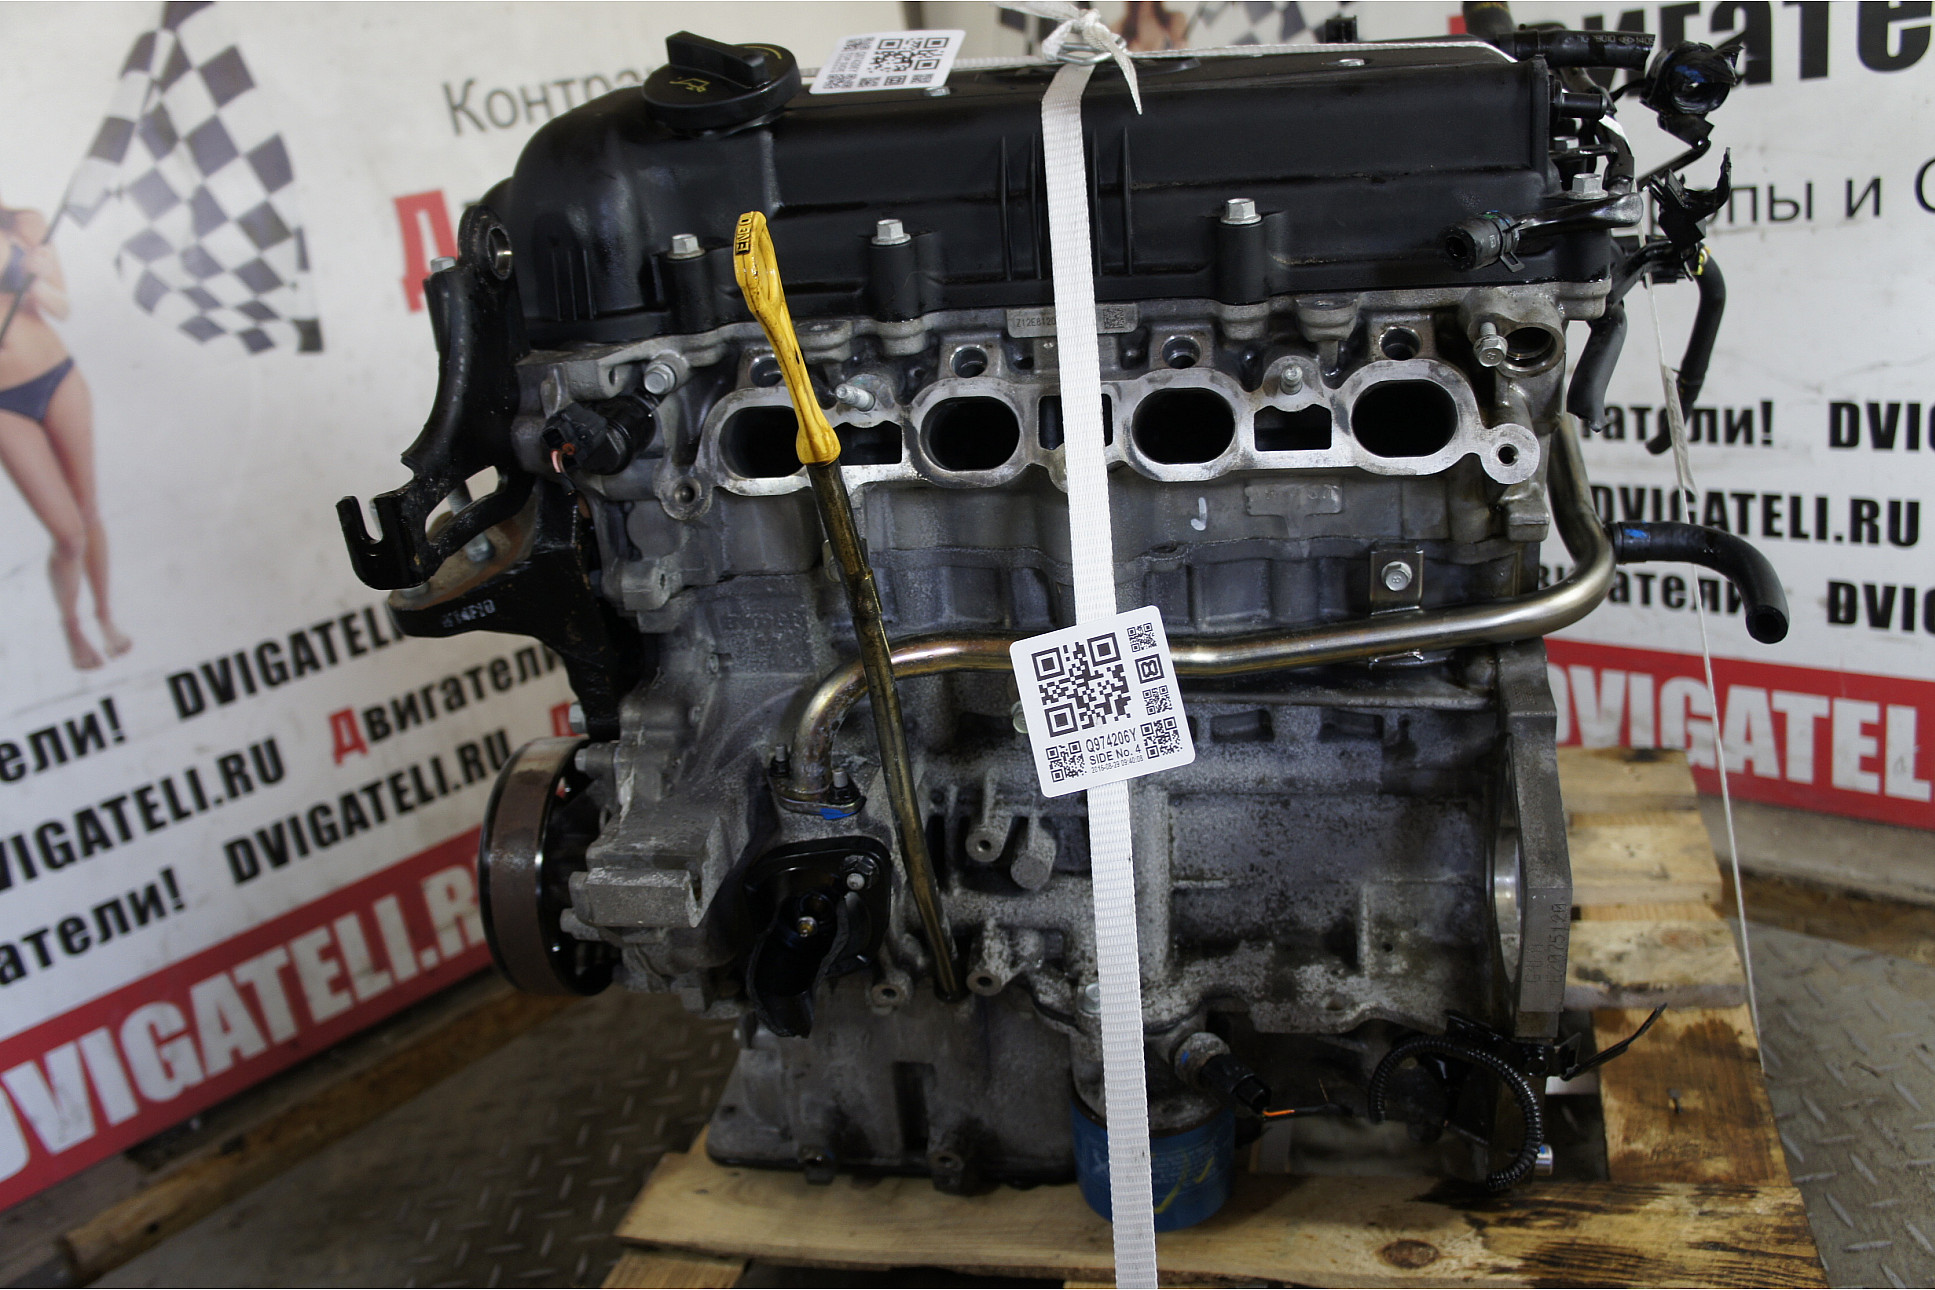 Двигатель 4hg1 isuzu, богдан, технические характеристики, какое масло лить, ремонт двигателя 4hg1, доработки и тюнинг, схема устройства, рекомендации по обслуживанию